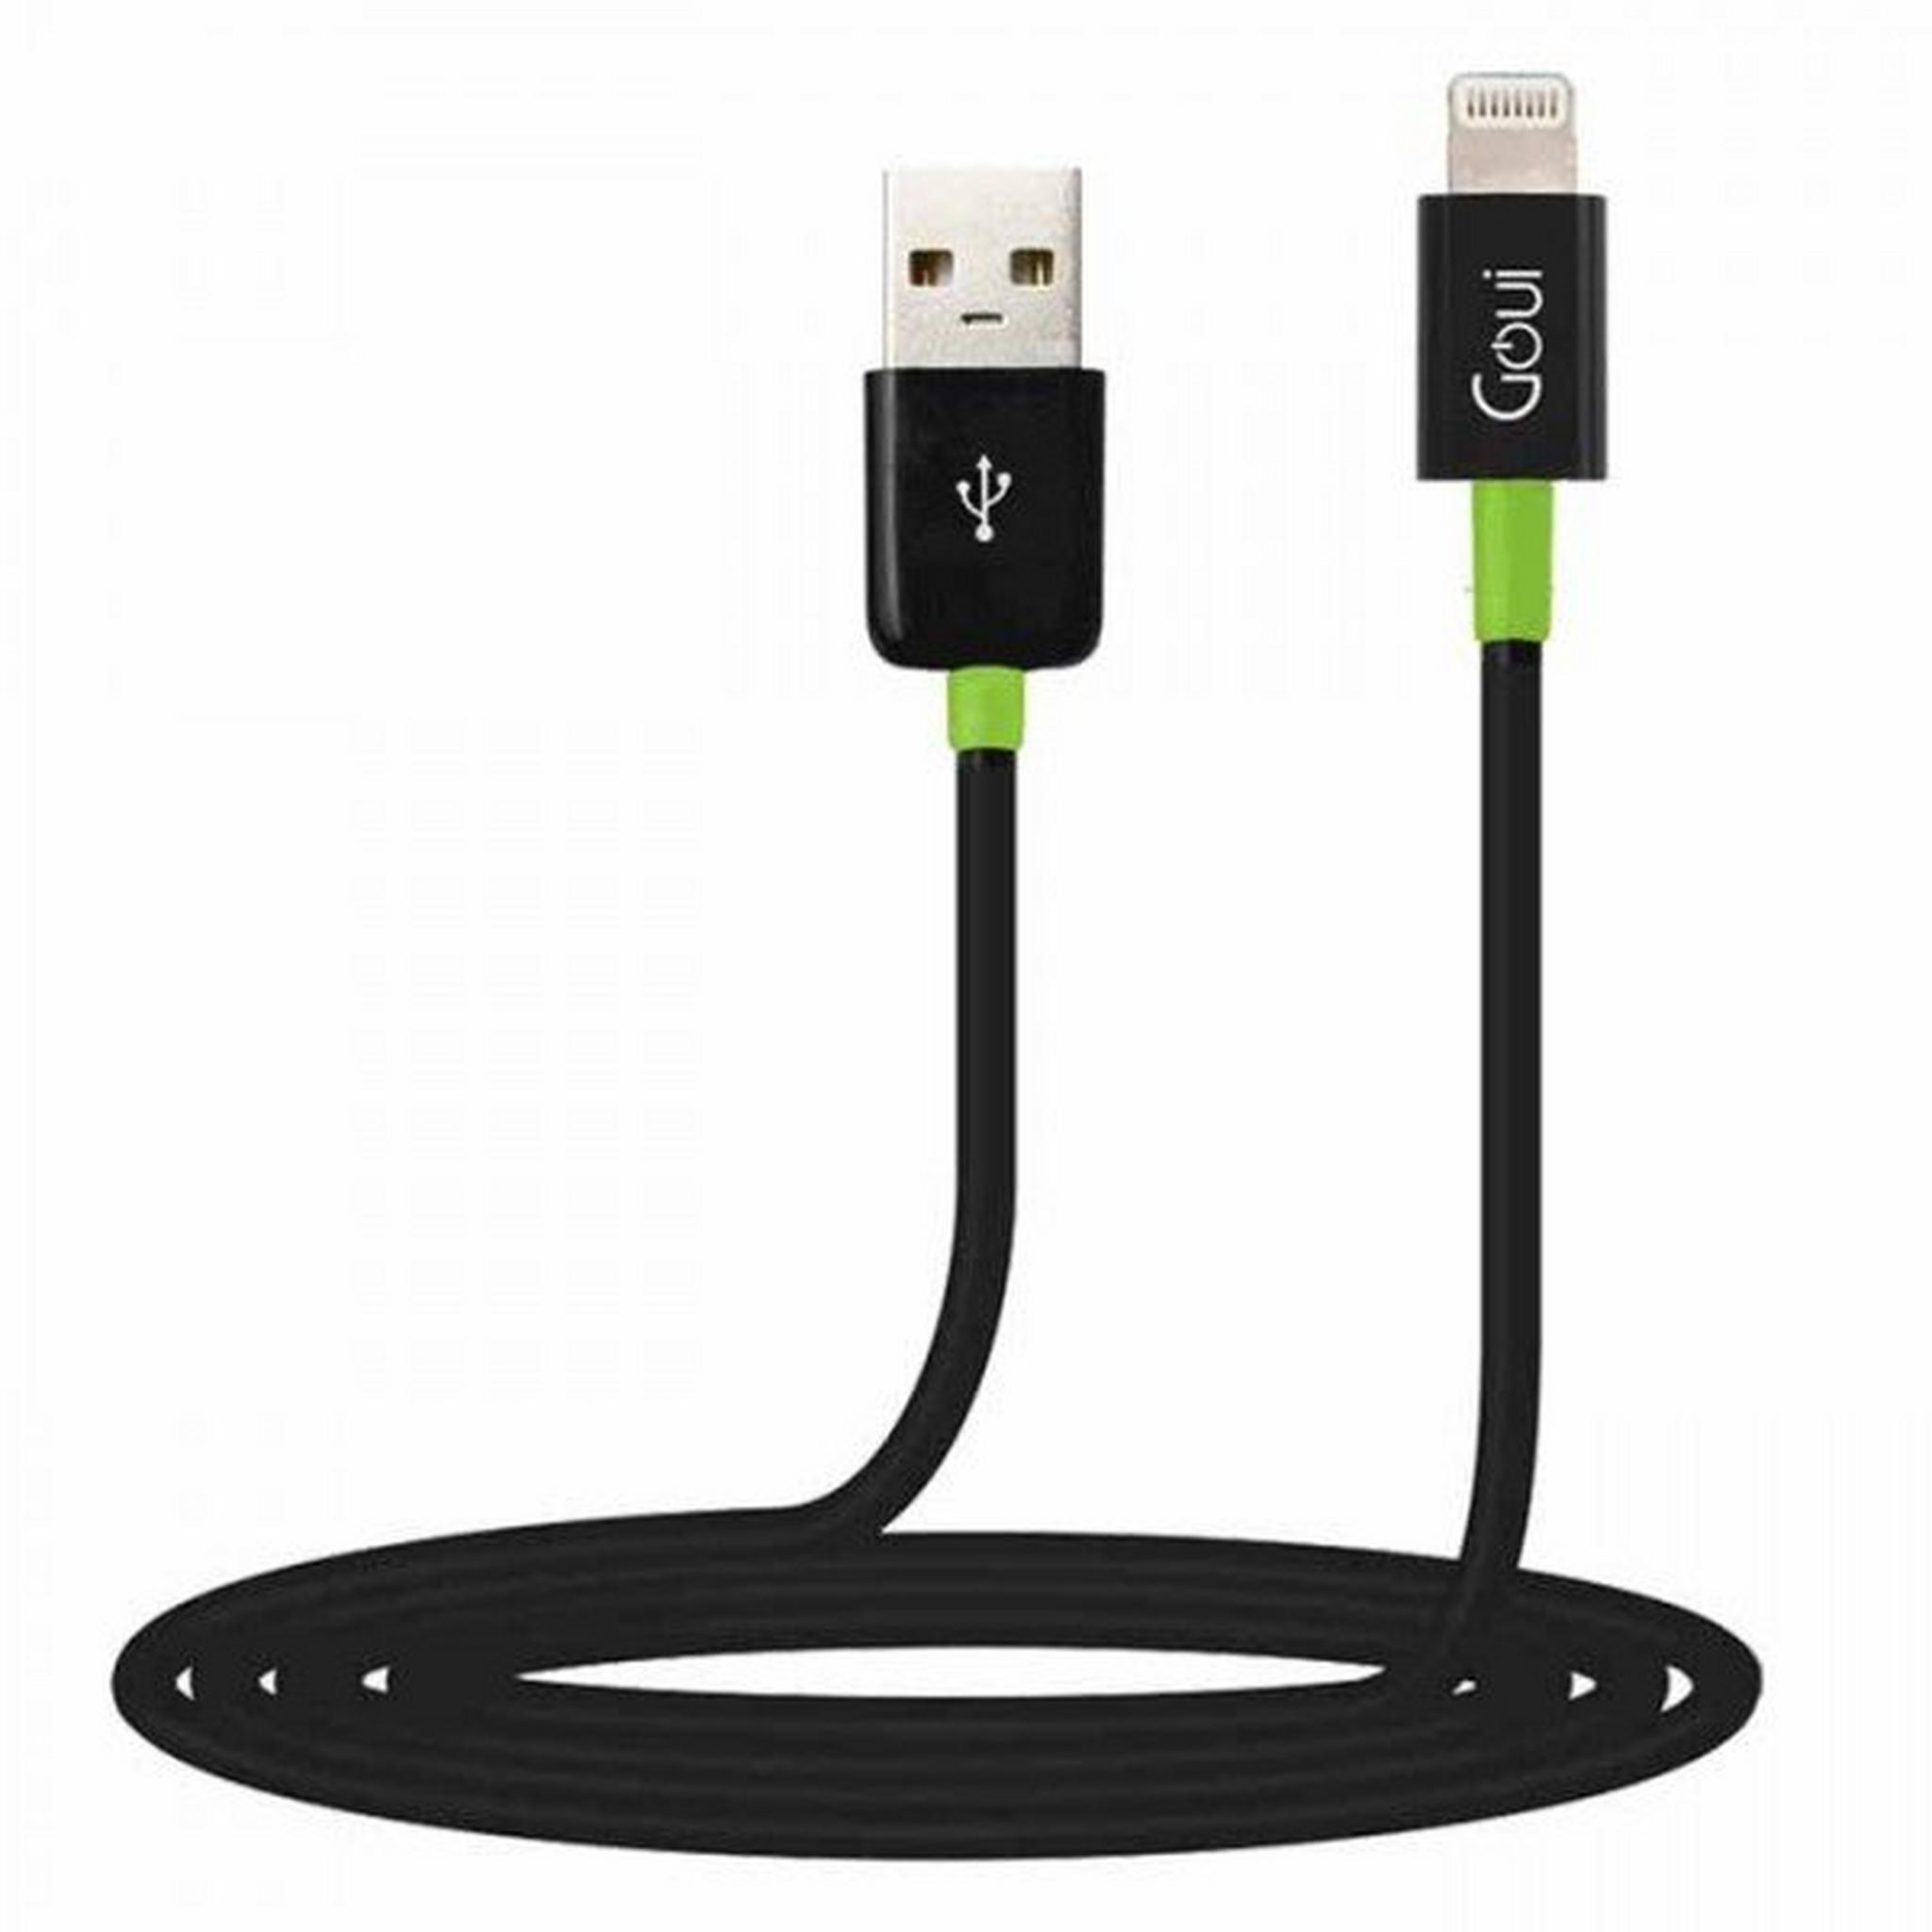 Goui 8 Pin 1 Meter Lightning To USB Cable – Black